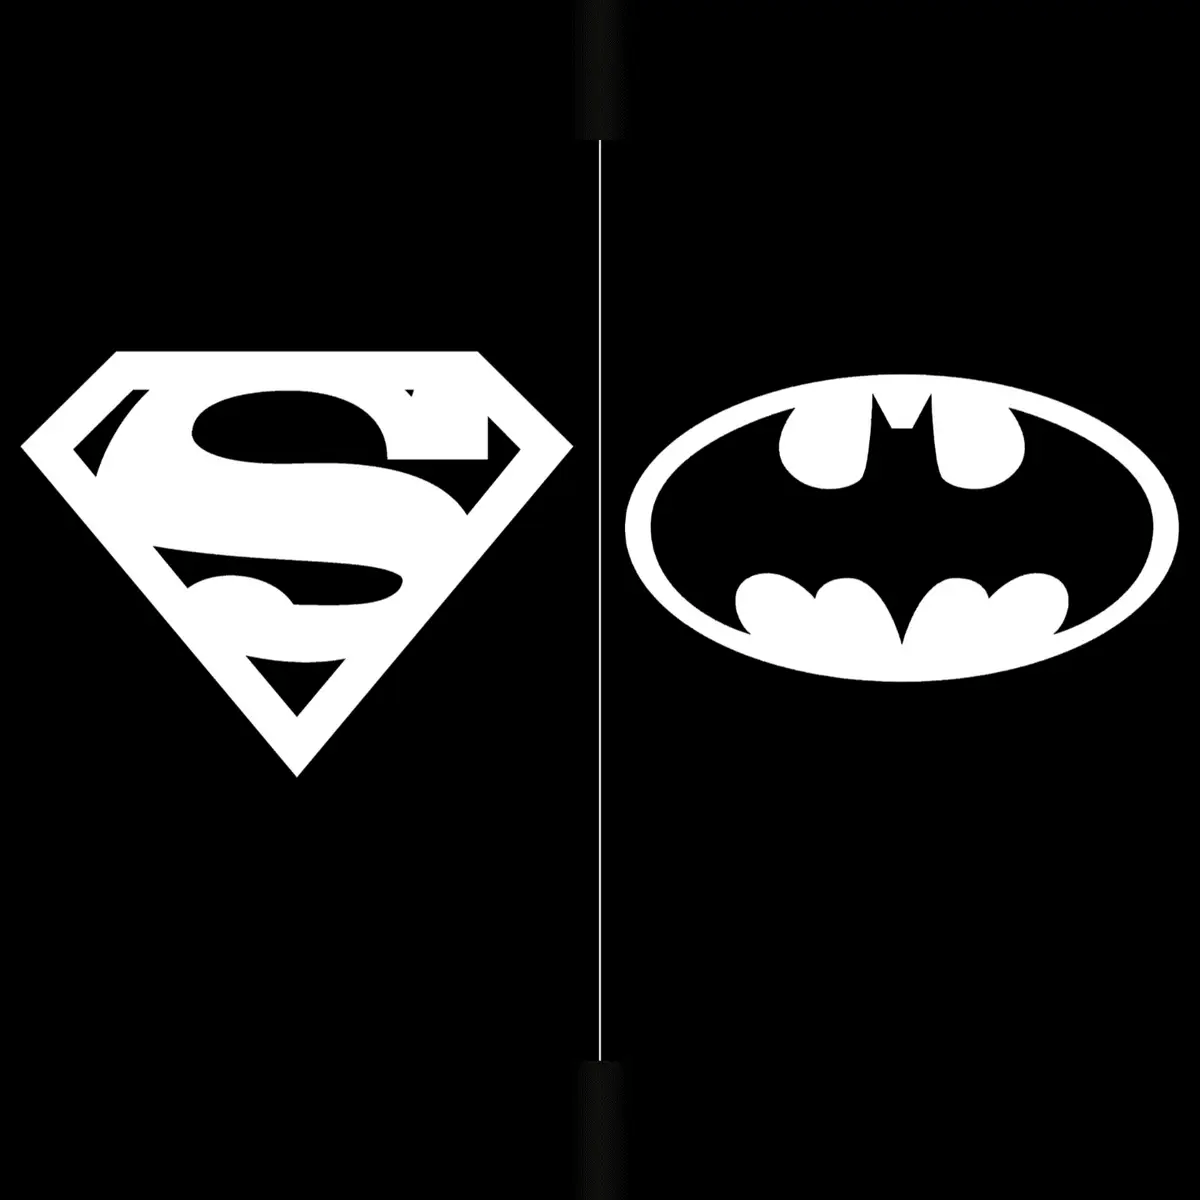 SUPERMAN 78 & BATMAN 89 - GLOW IN THE DARK EXCLUSIVE VAR - SET